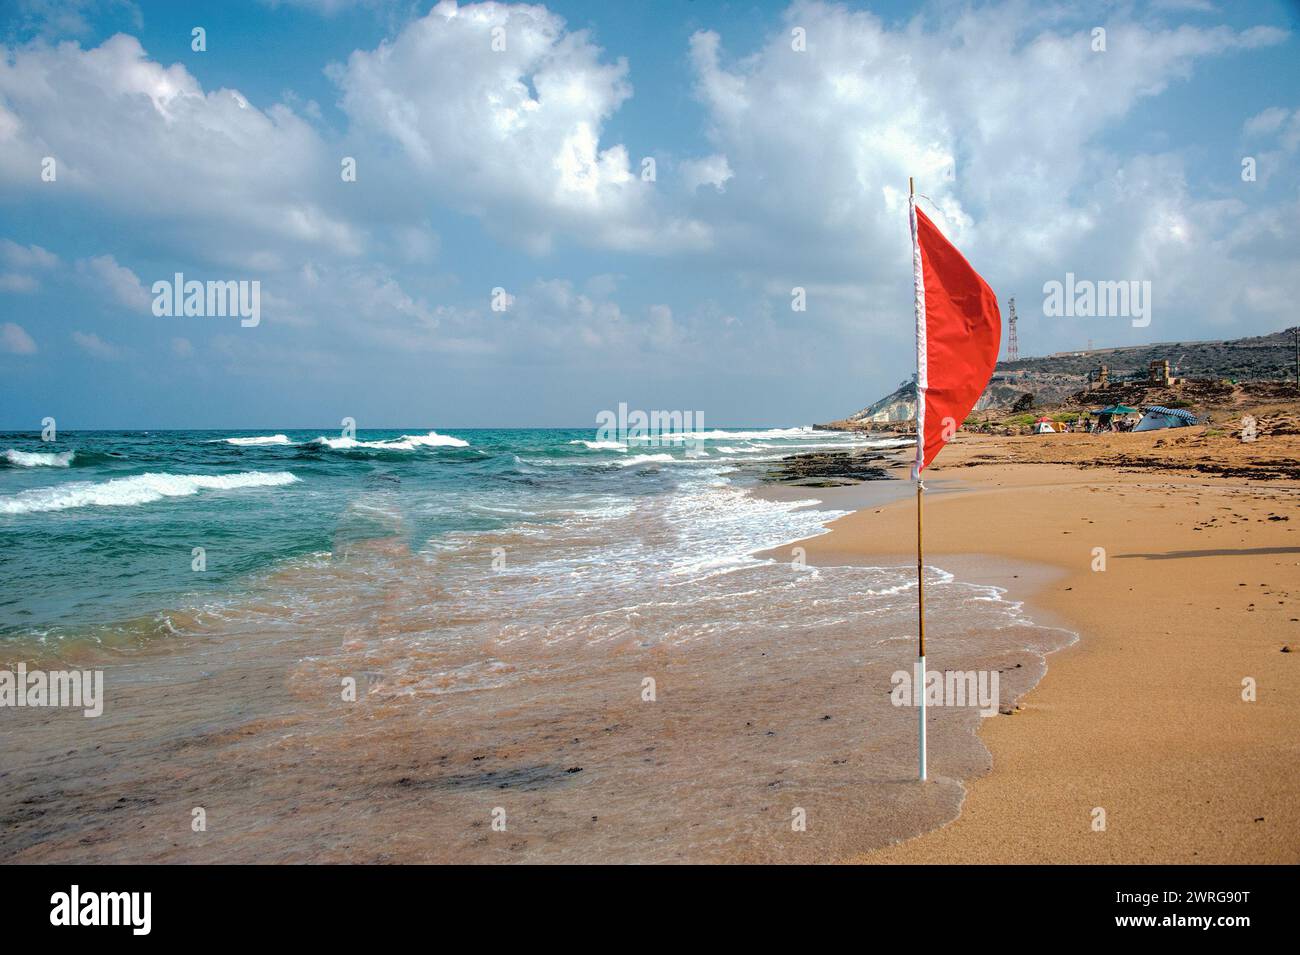 Si avvicina una tempesta e nuotare in mare è proibito e i bagnini hanno appeso una bandiera rossa sulla spiaggia Foto Stock